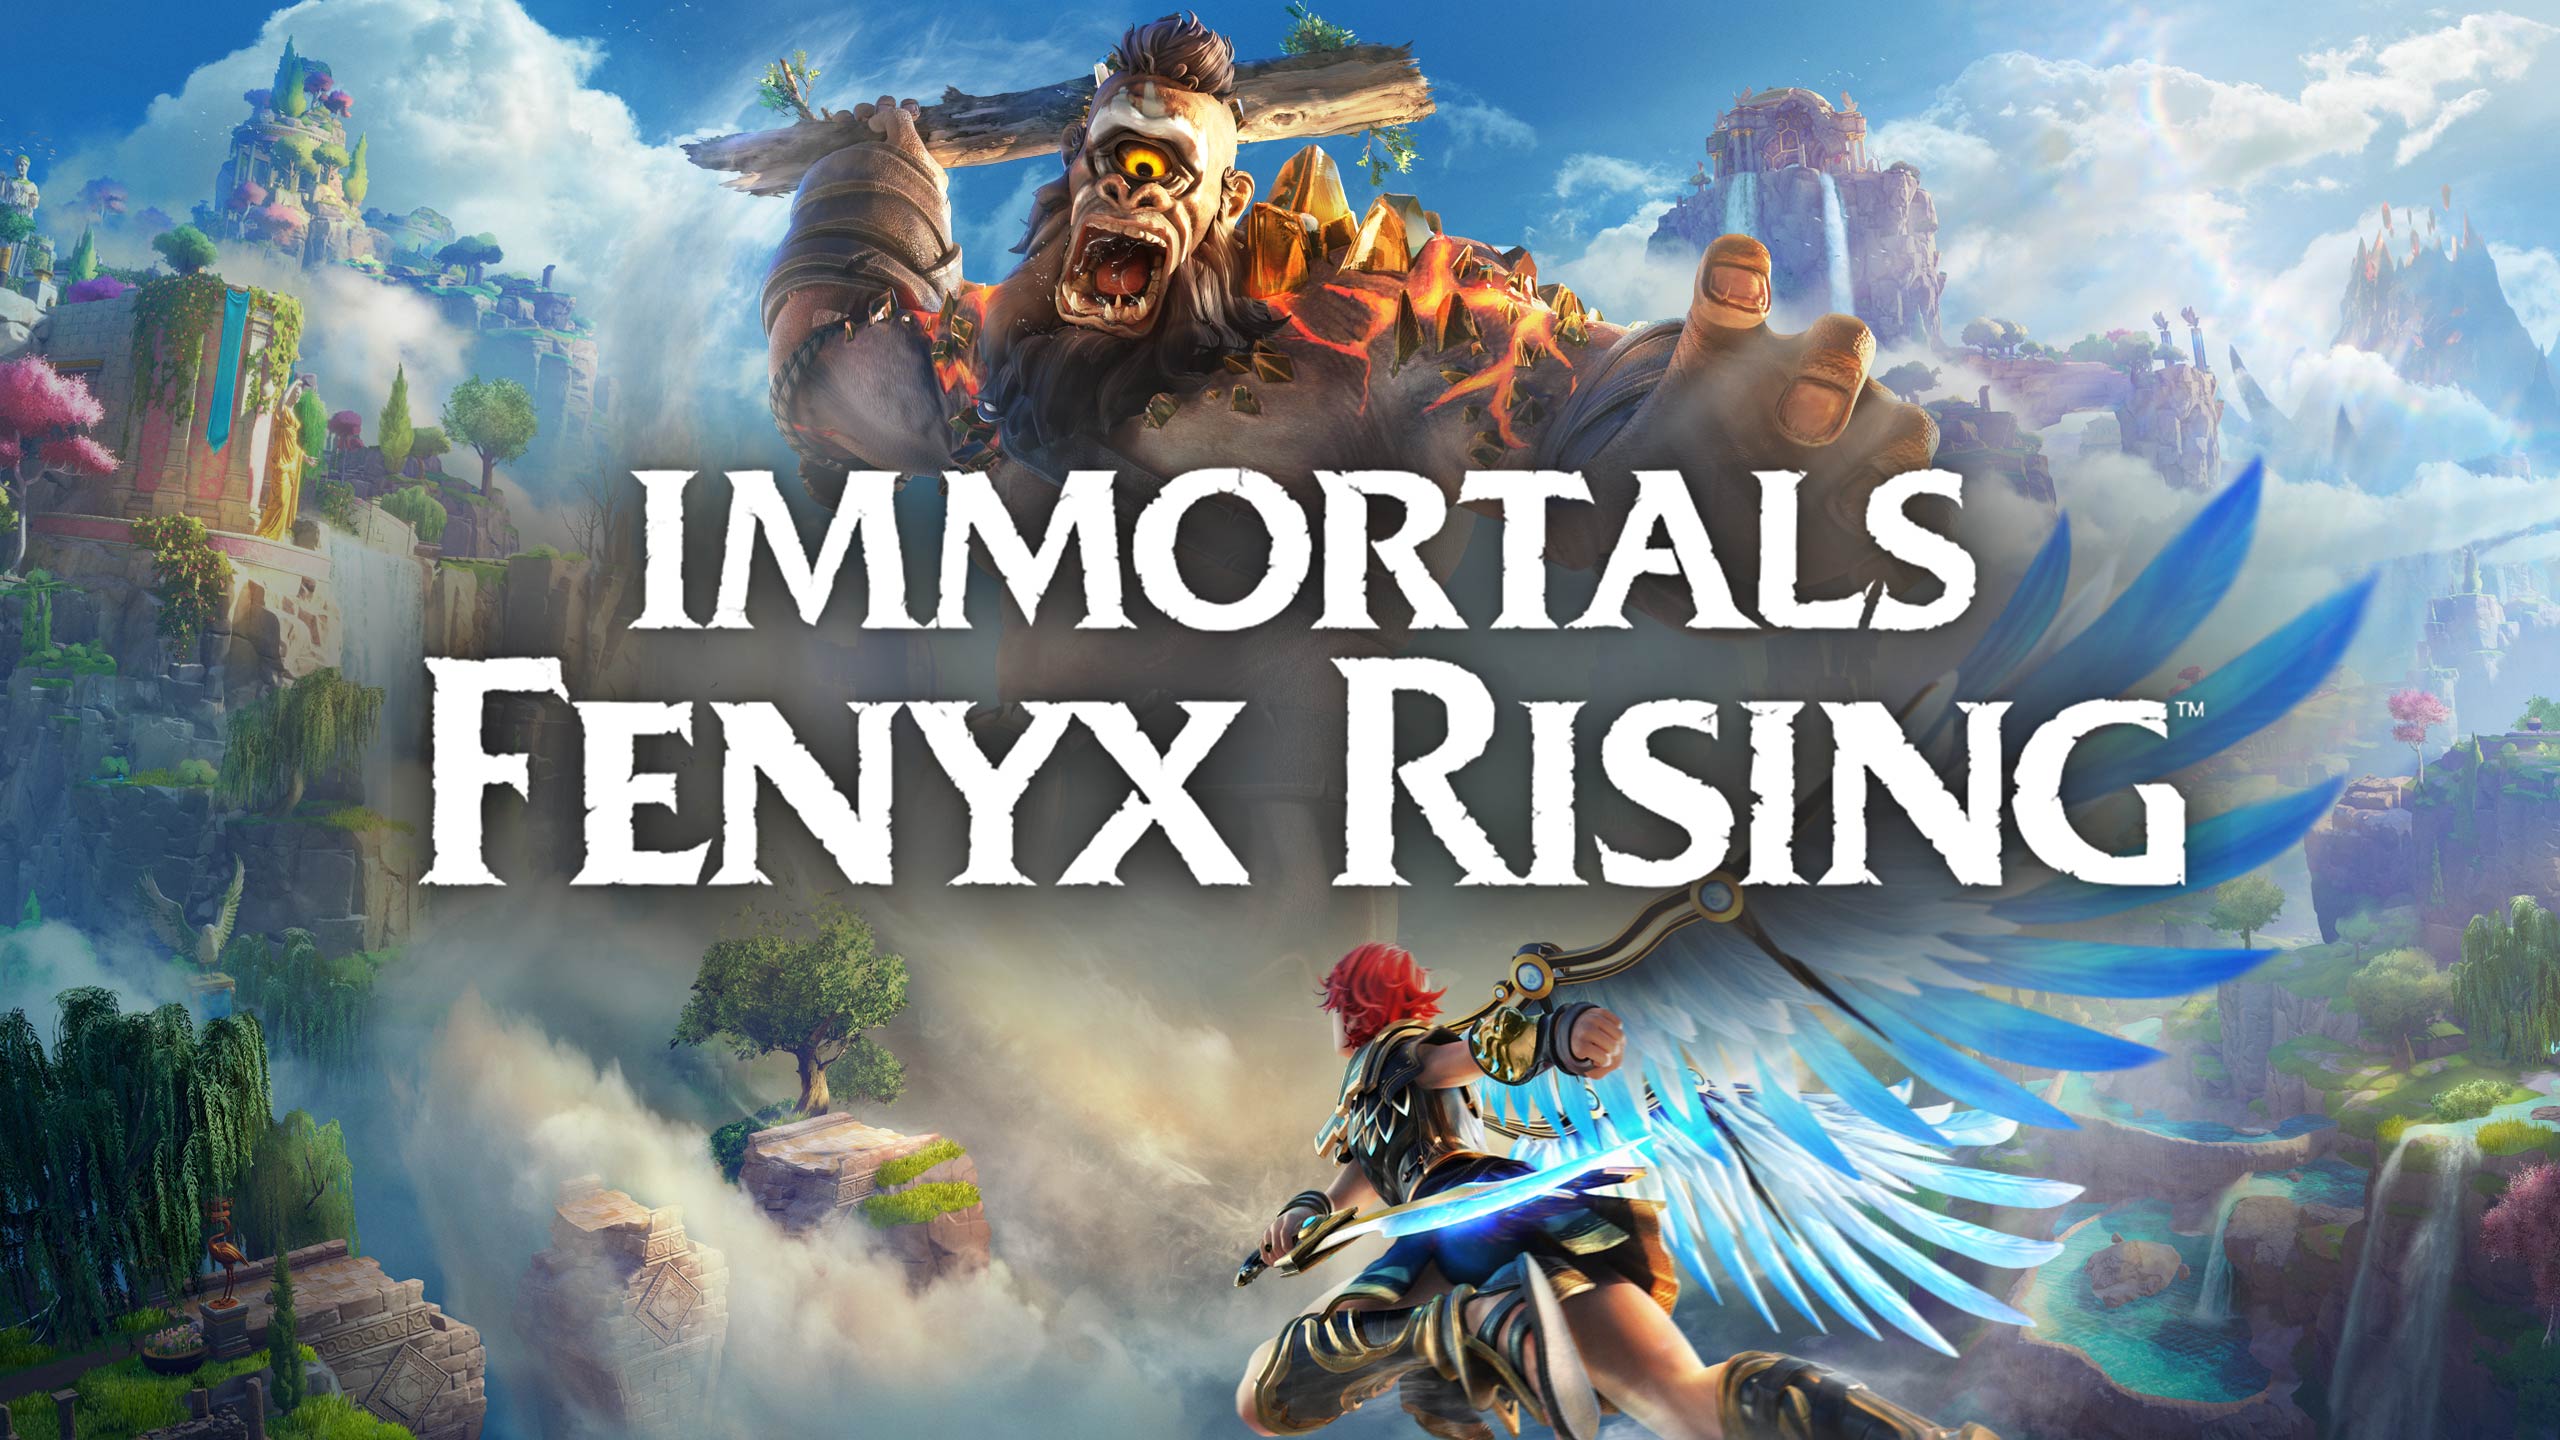 Immortals Fenyx Rising PC 2020 (Игрофильм/сериал) №12 Кузница богов